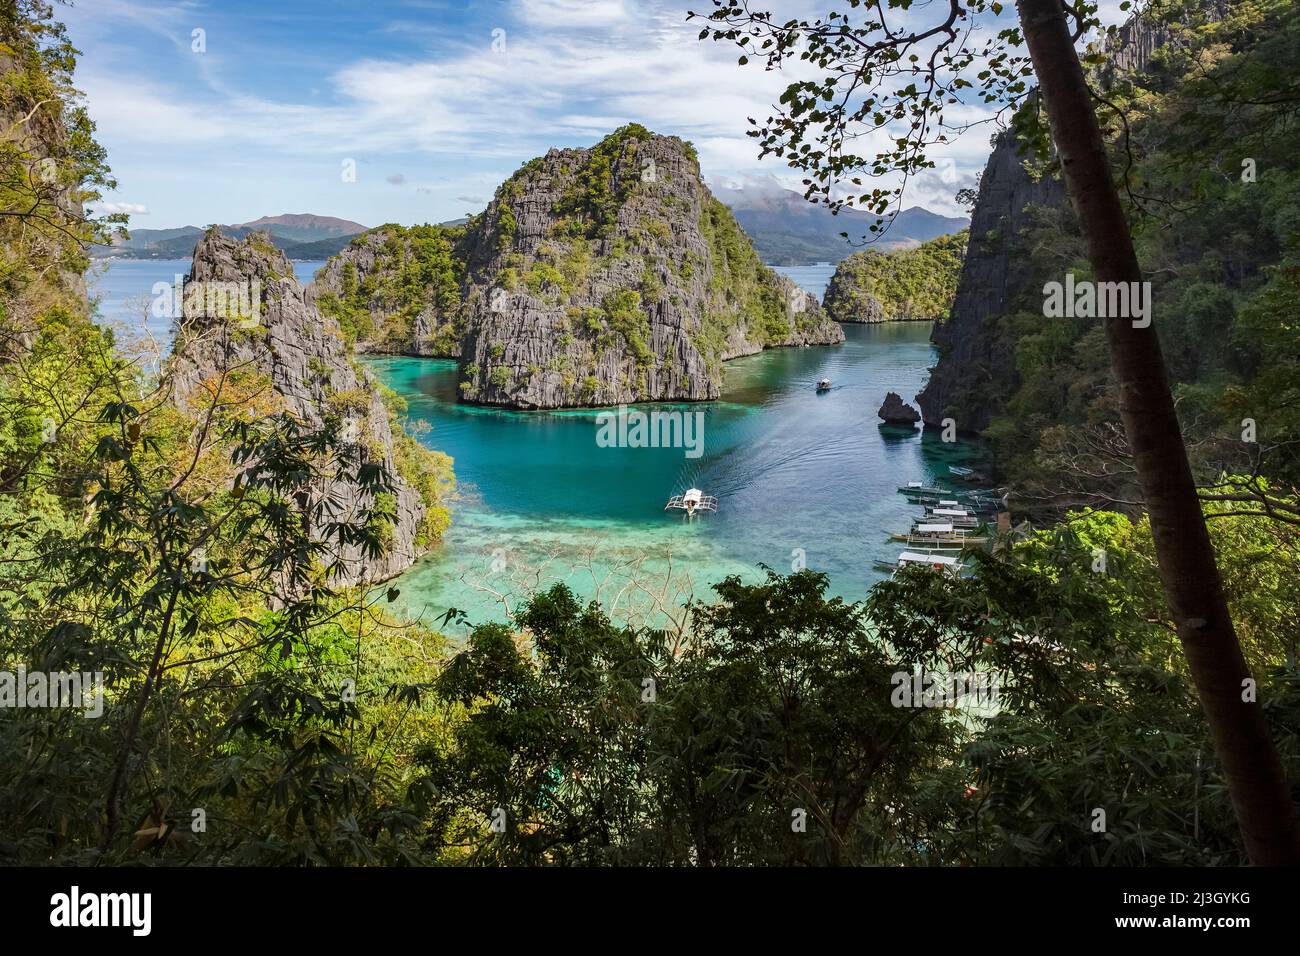 Philippinen, Palawan, Calamians-Archipel, Naturbiotikgebiet Coron Island, Coron Island, Kayangan Lake, erhöhter Blick auf den Ort, an dem Pirogen anlegen und Besucher an den See gelangen, türkisfarbenes Meer, umgeben von steilen felsigen Inseln Stockfoto